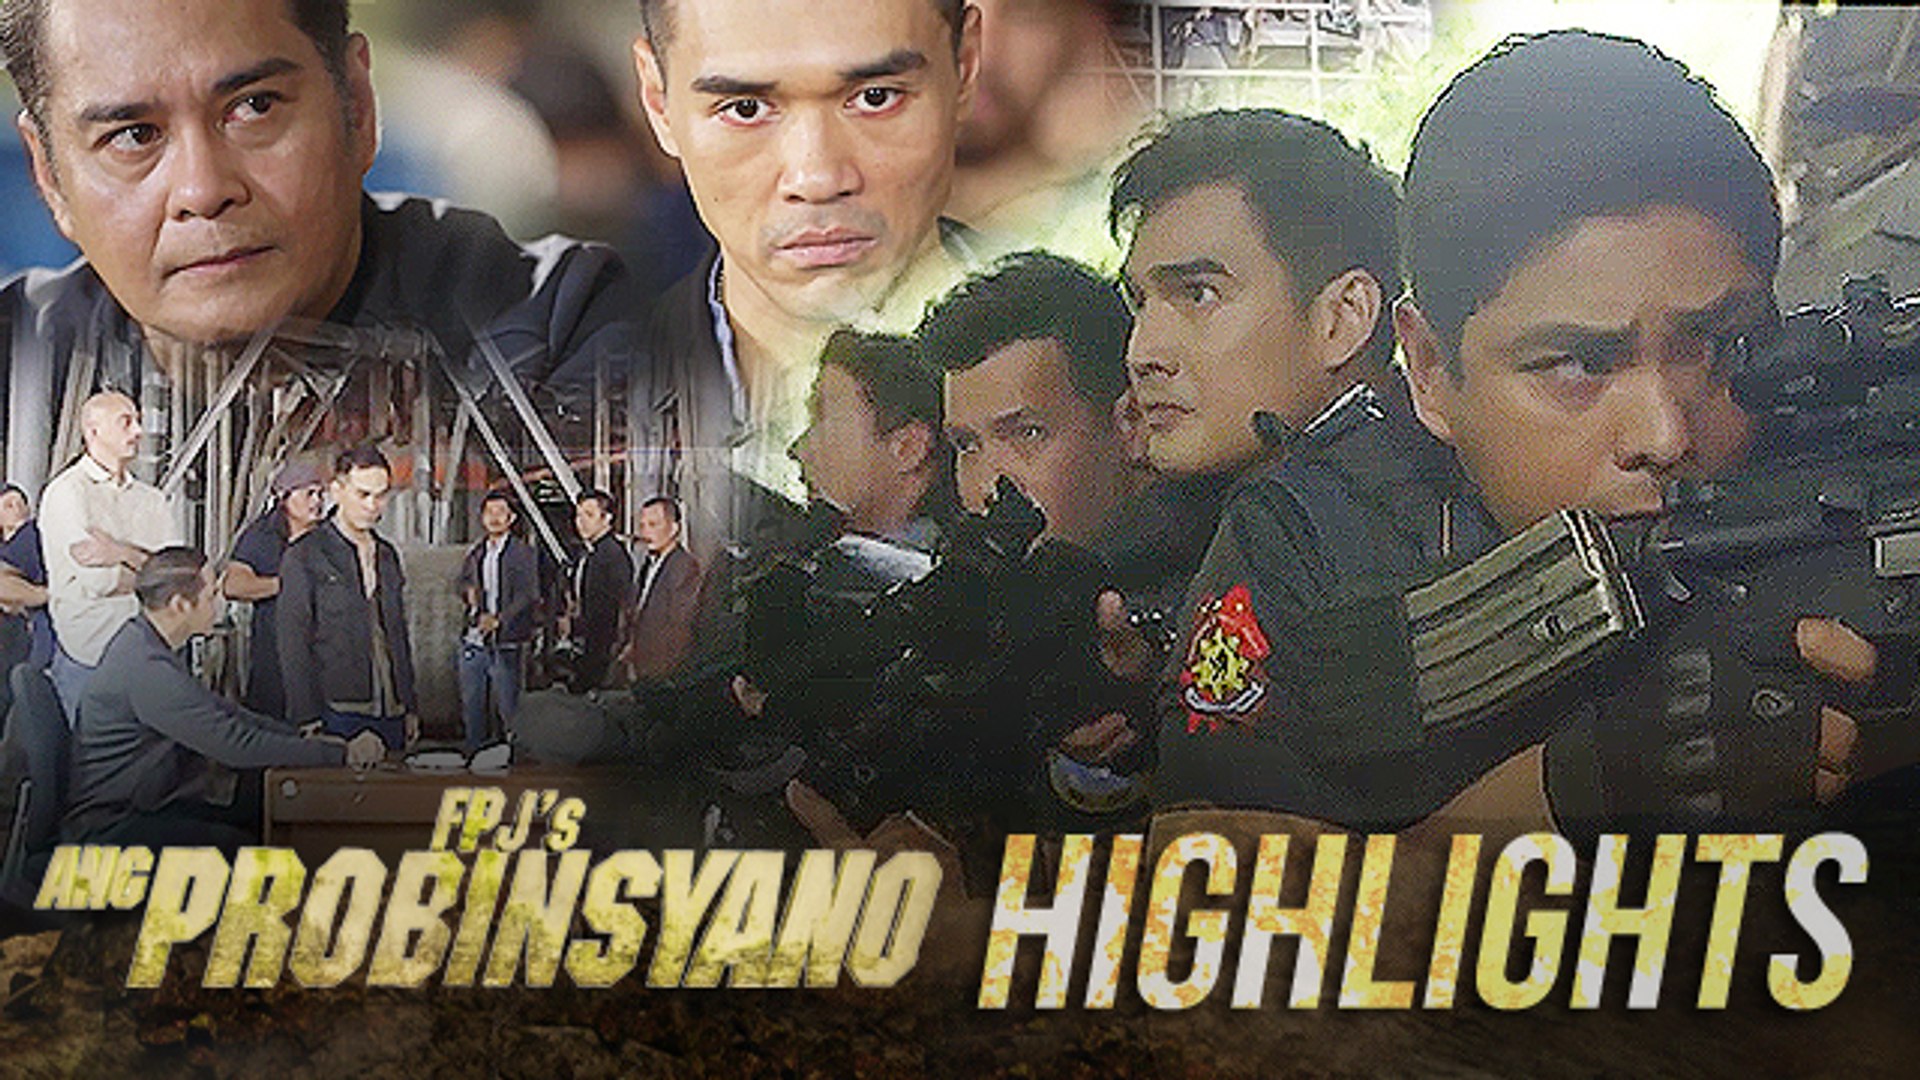 Task Force Agila commences their assault on Renato and Jacob | FPJ's Ang Probinsyano